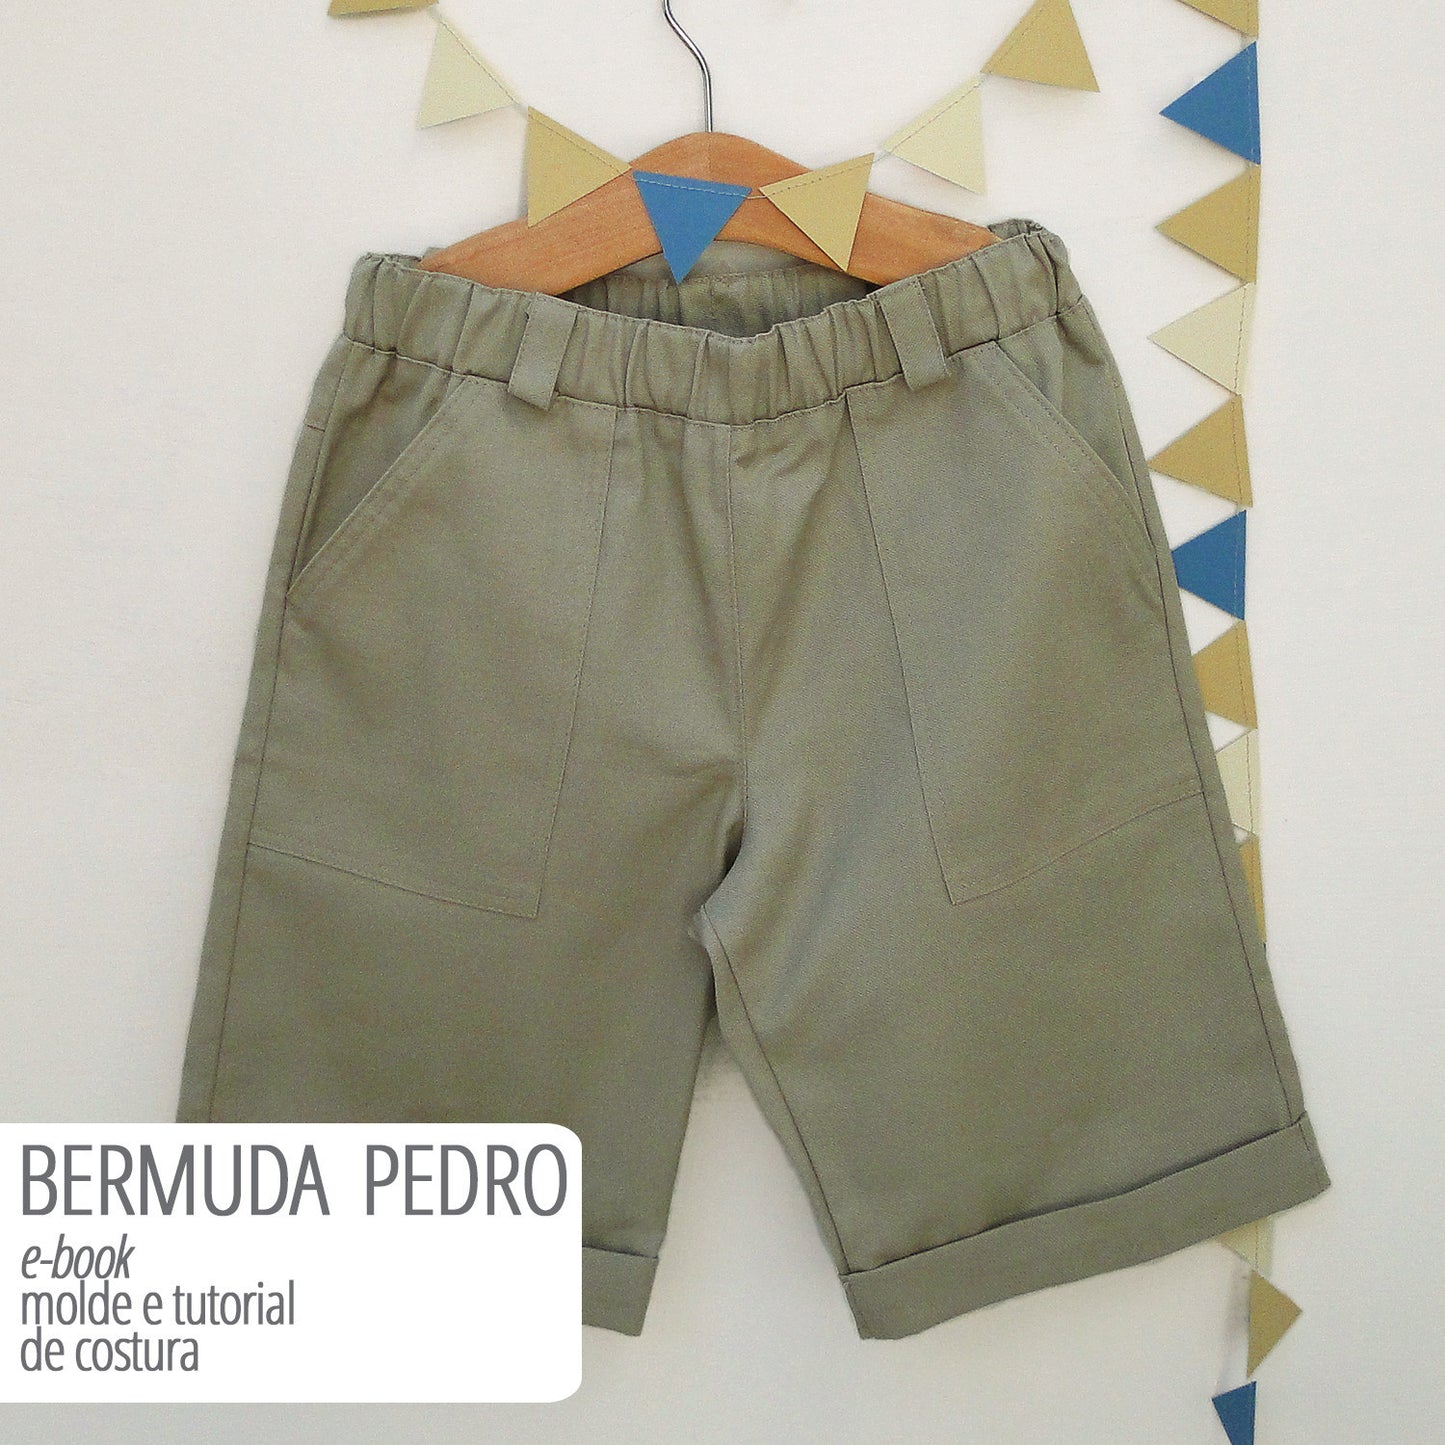 Bermuda infantil masculina - molde de costura com aula